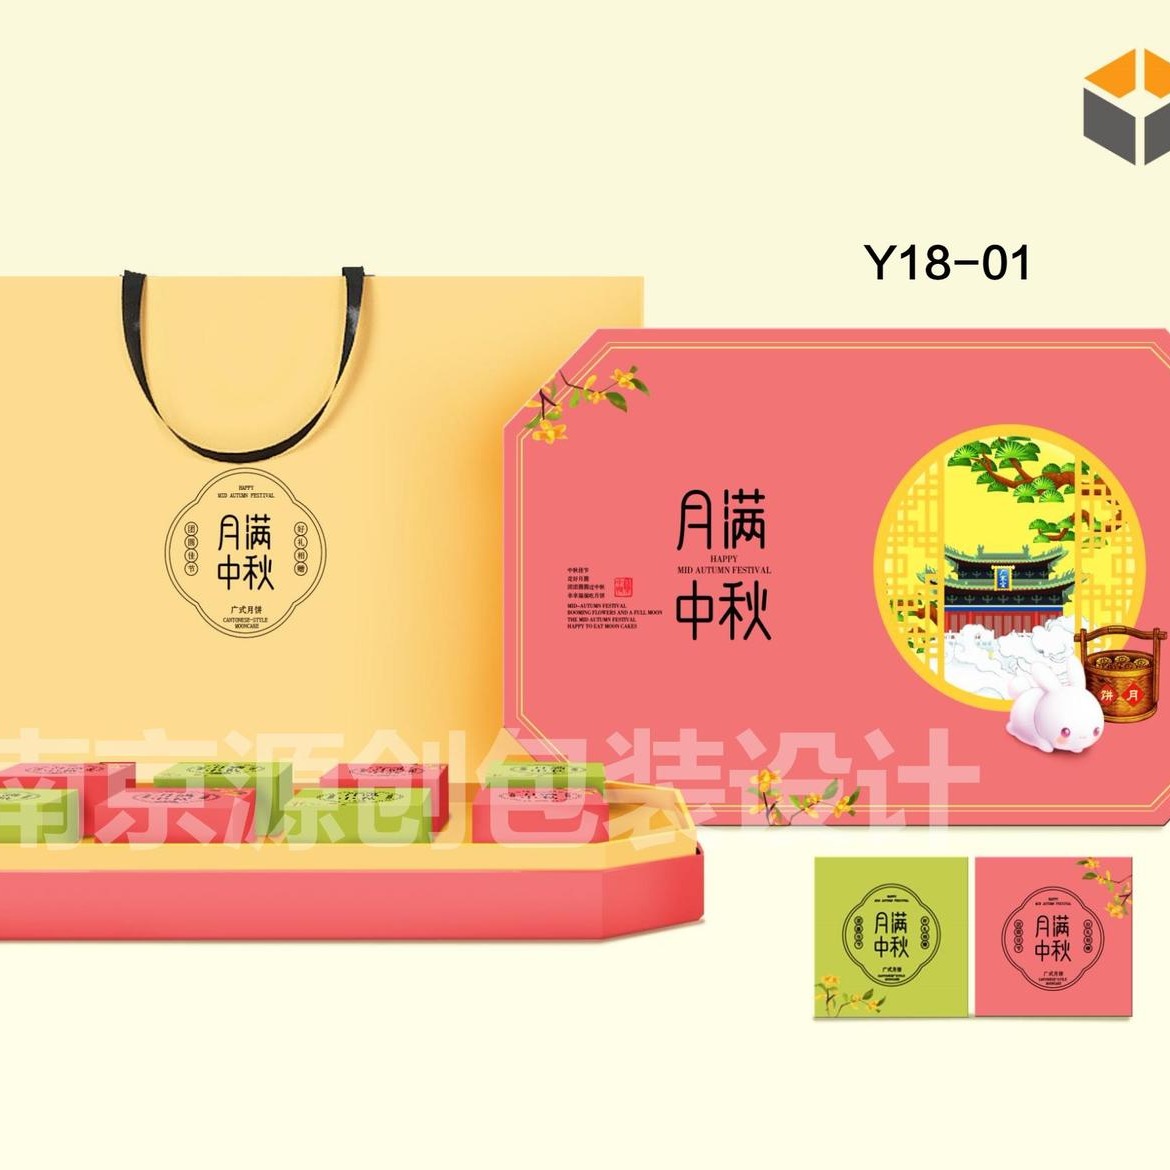 中秋礼月包装盒设计 南京源创包装专业设计生产礼品盒包装